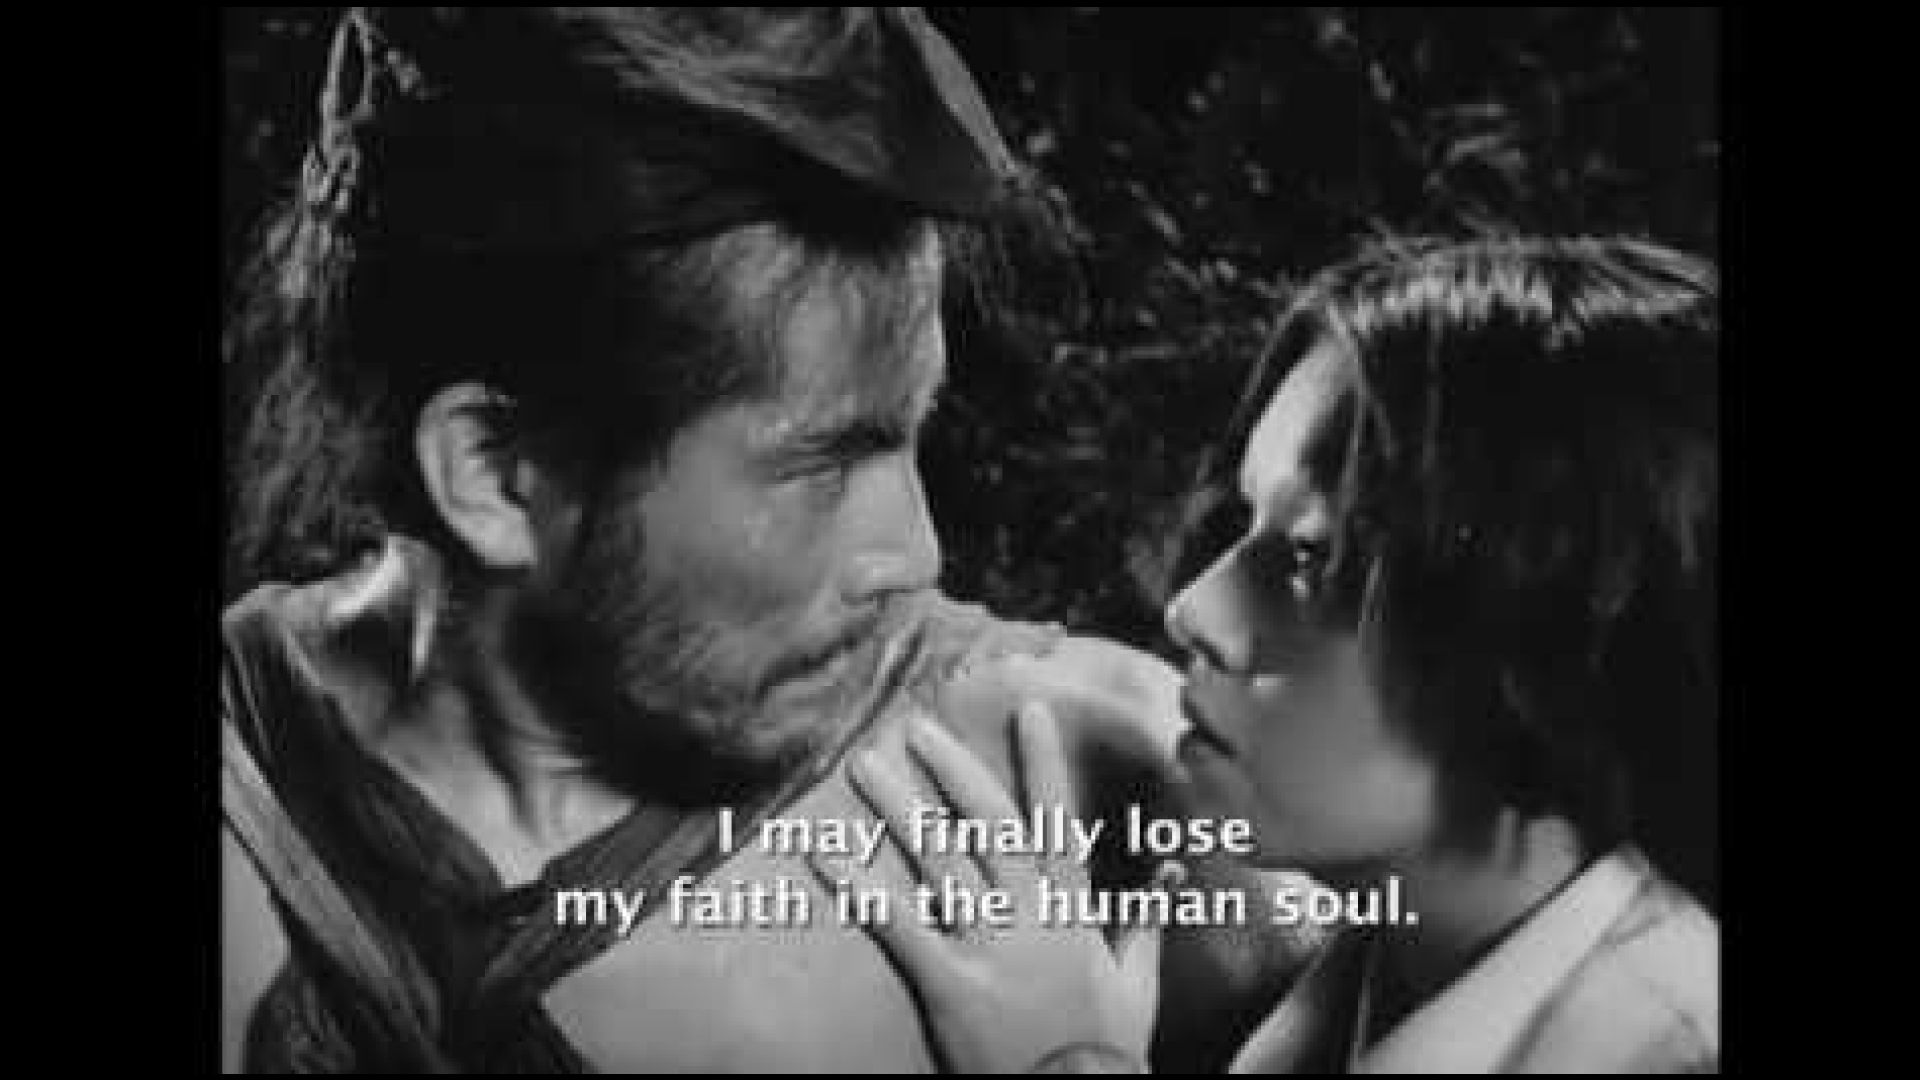 Rashomon Trailer Directed by Akira Kurosawa